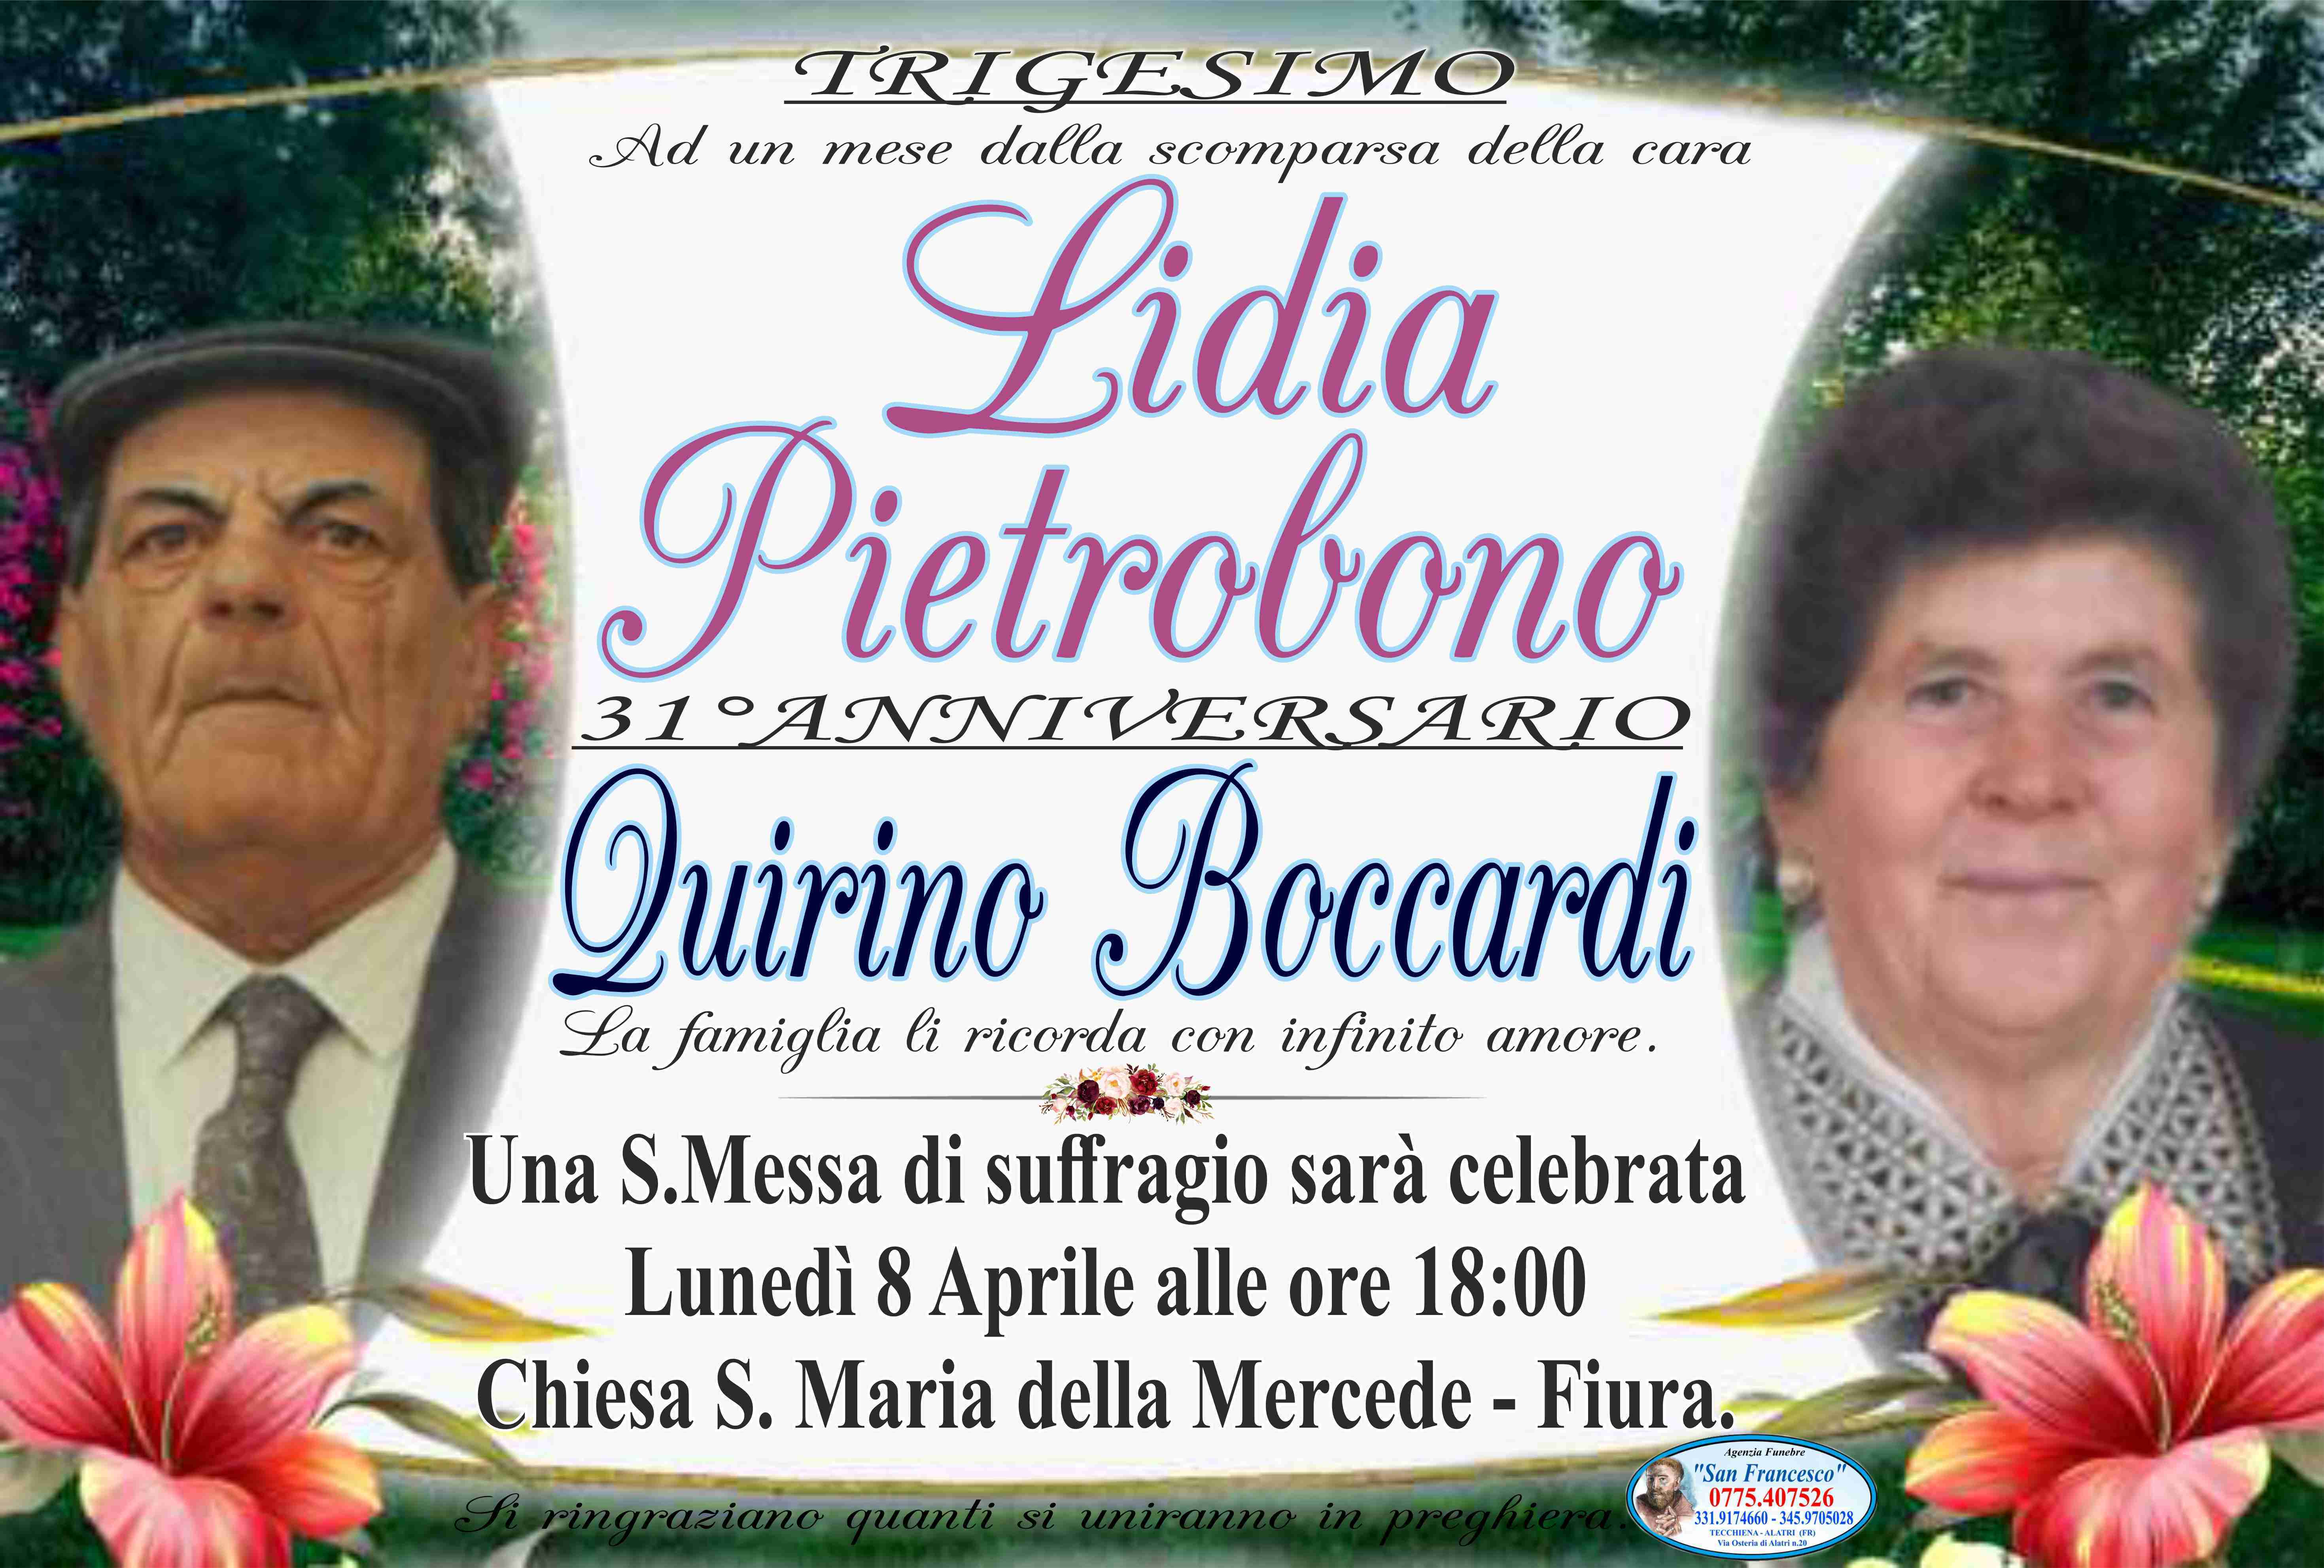 Lidia Pietrobono e Quirino Boccardi